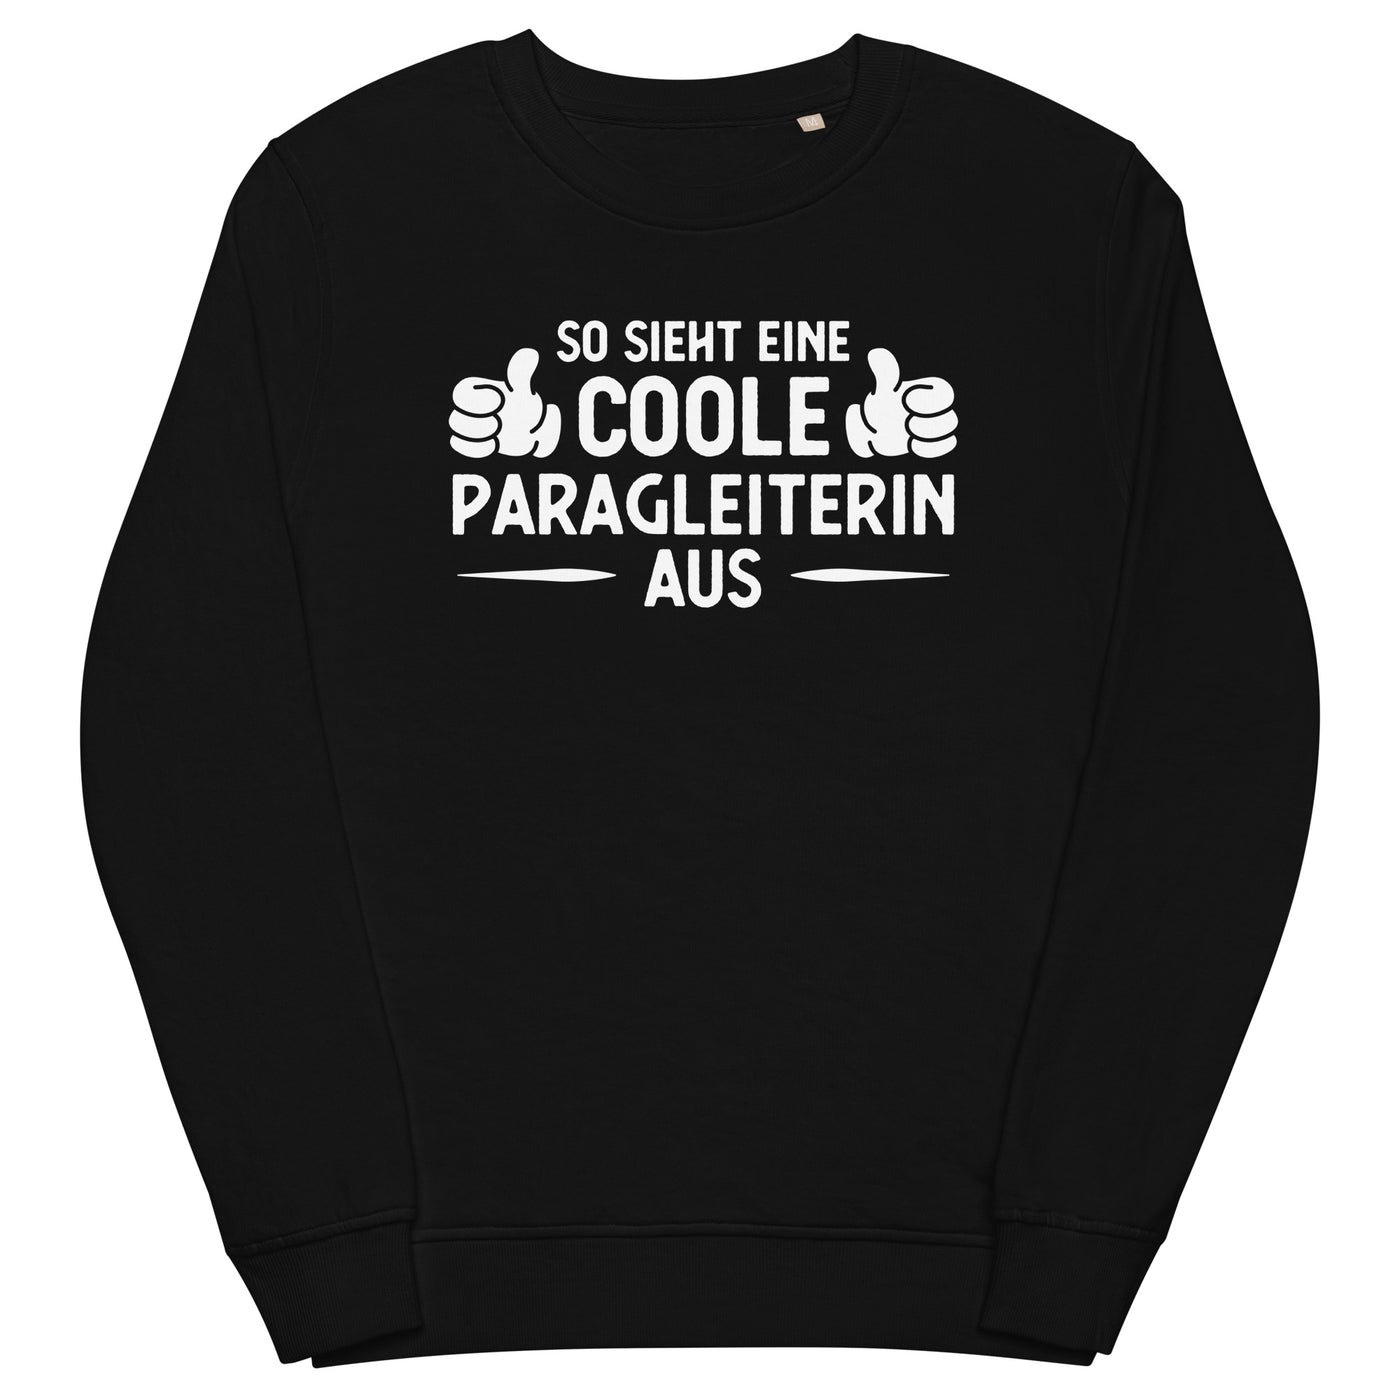 So Sieht Eine Coole Paragleiterin Aus - Unisex Premium Organic Sweatshirt berge xxx yyy zzz Black